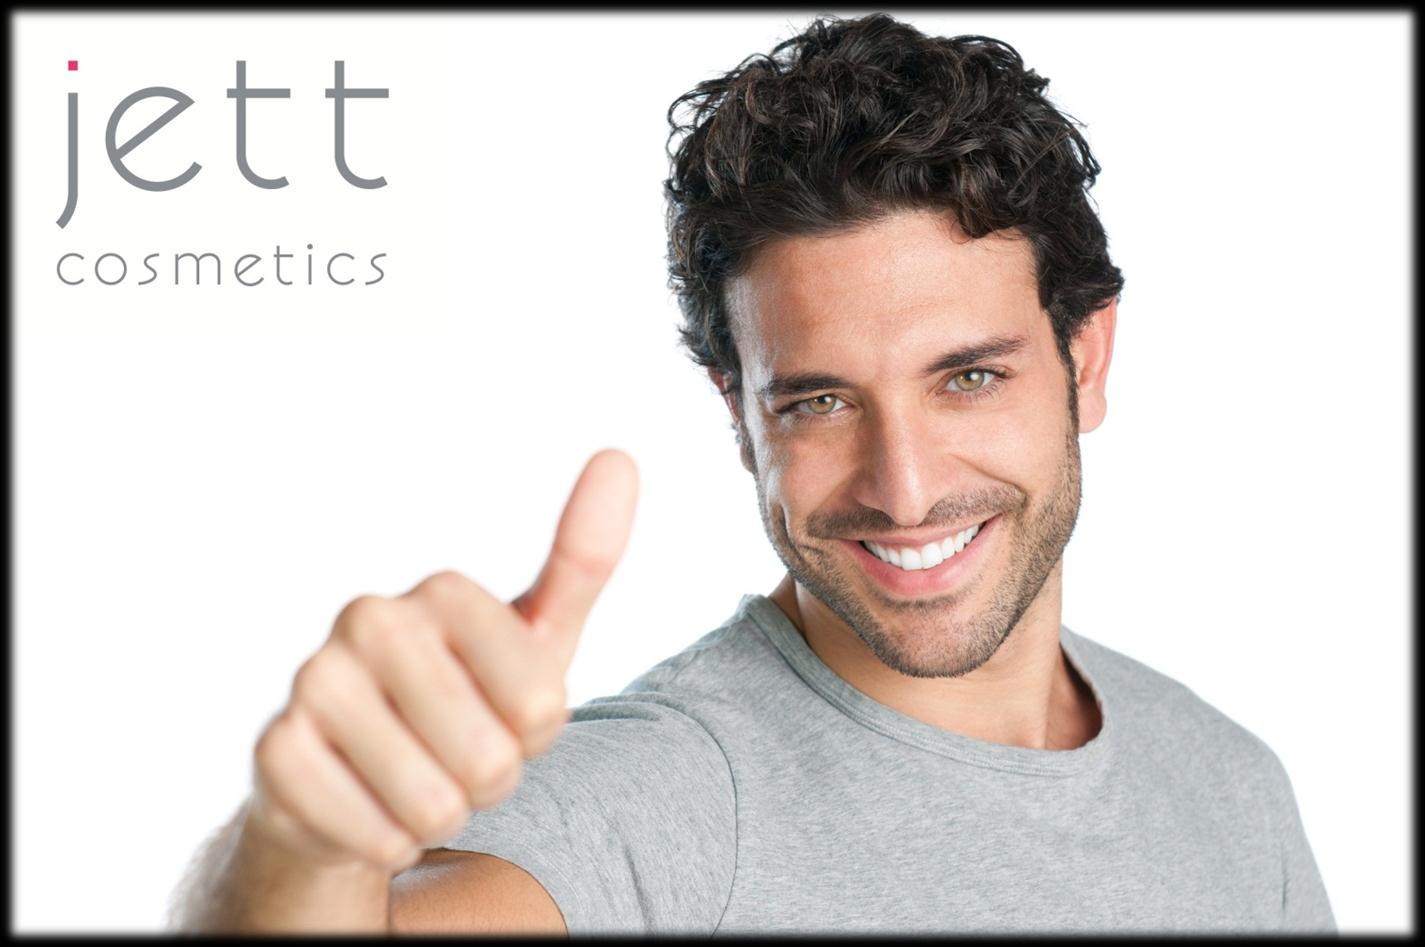 Využívání přístroje Hair JETT je pro pacienty s alopecií prospěšné, jelikož zvyšuje hustotu vlasů a